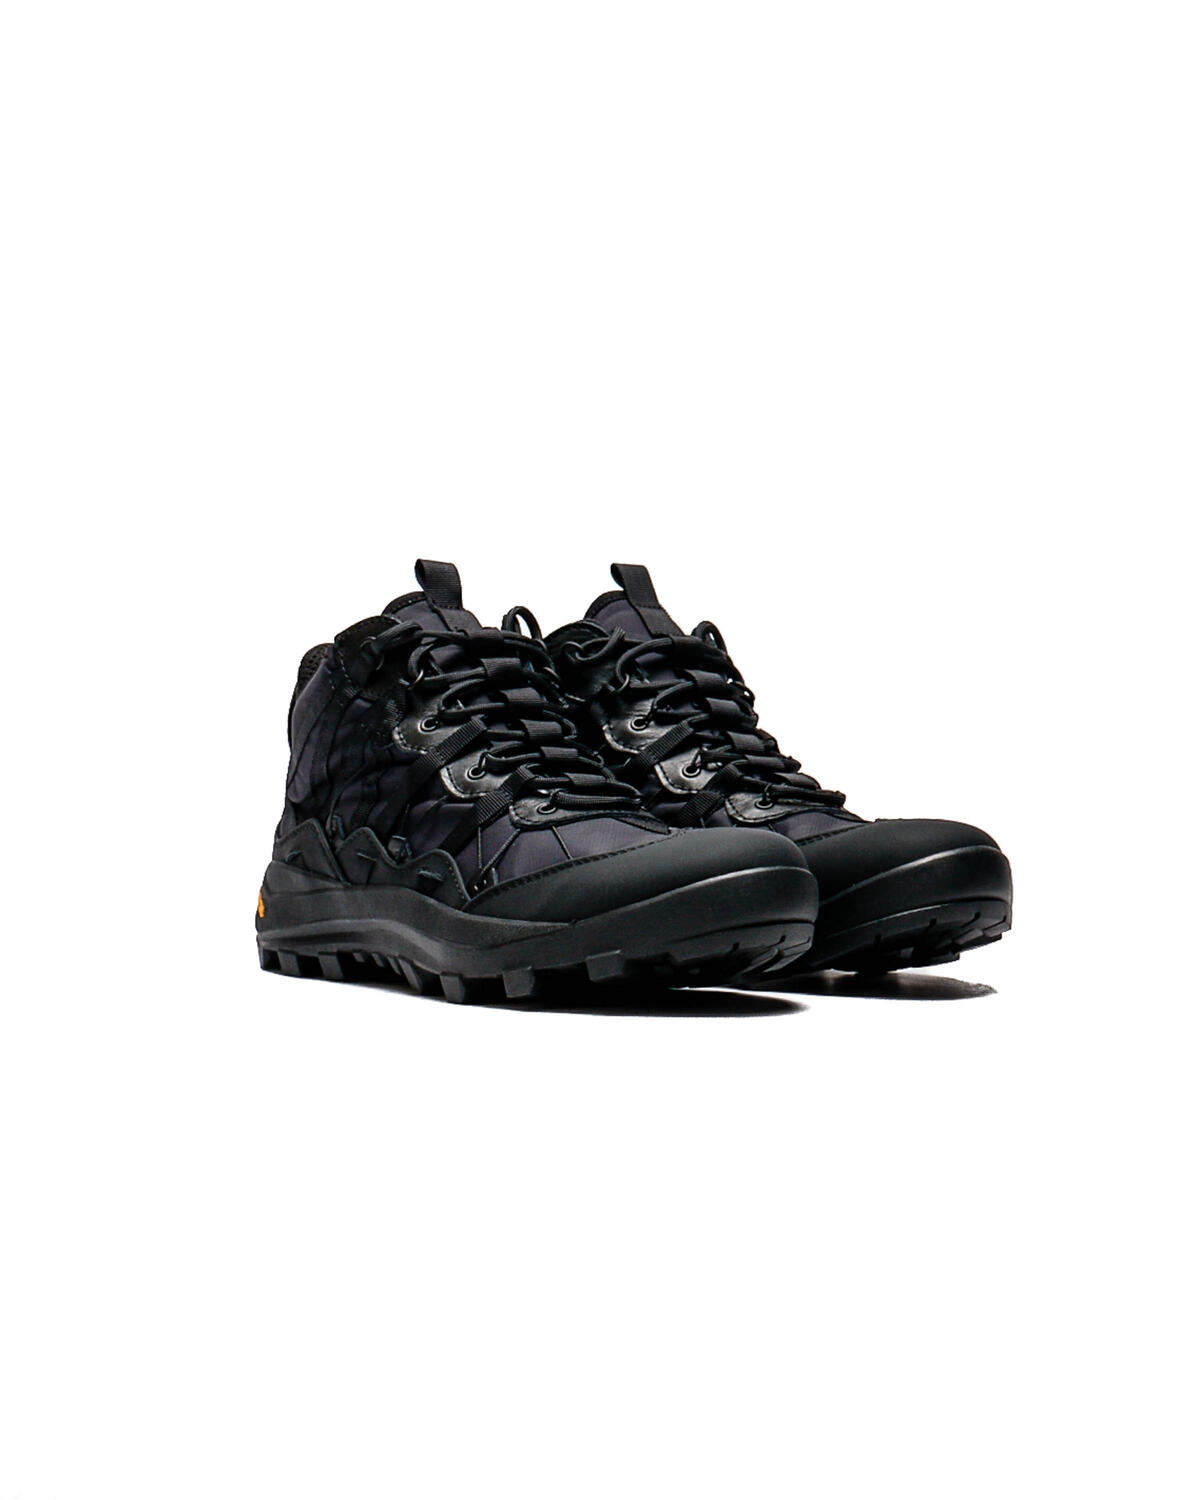 SNOW PEAK SP Mountain Treck Shoes | SE-22AU101-BK | AFEW STORE